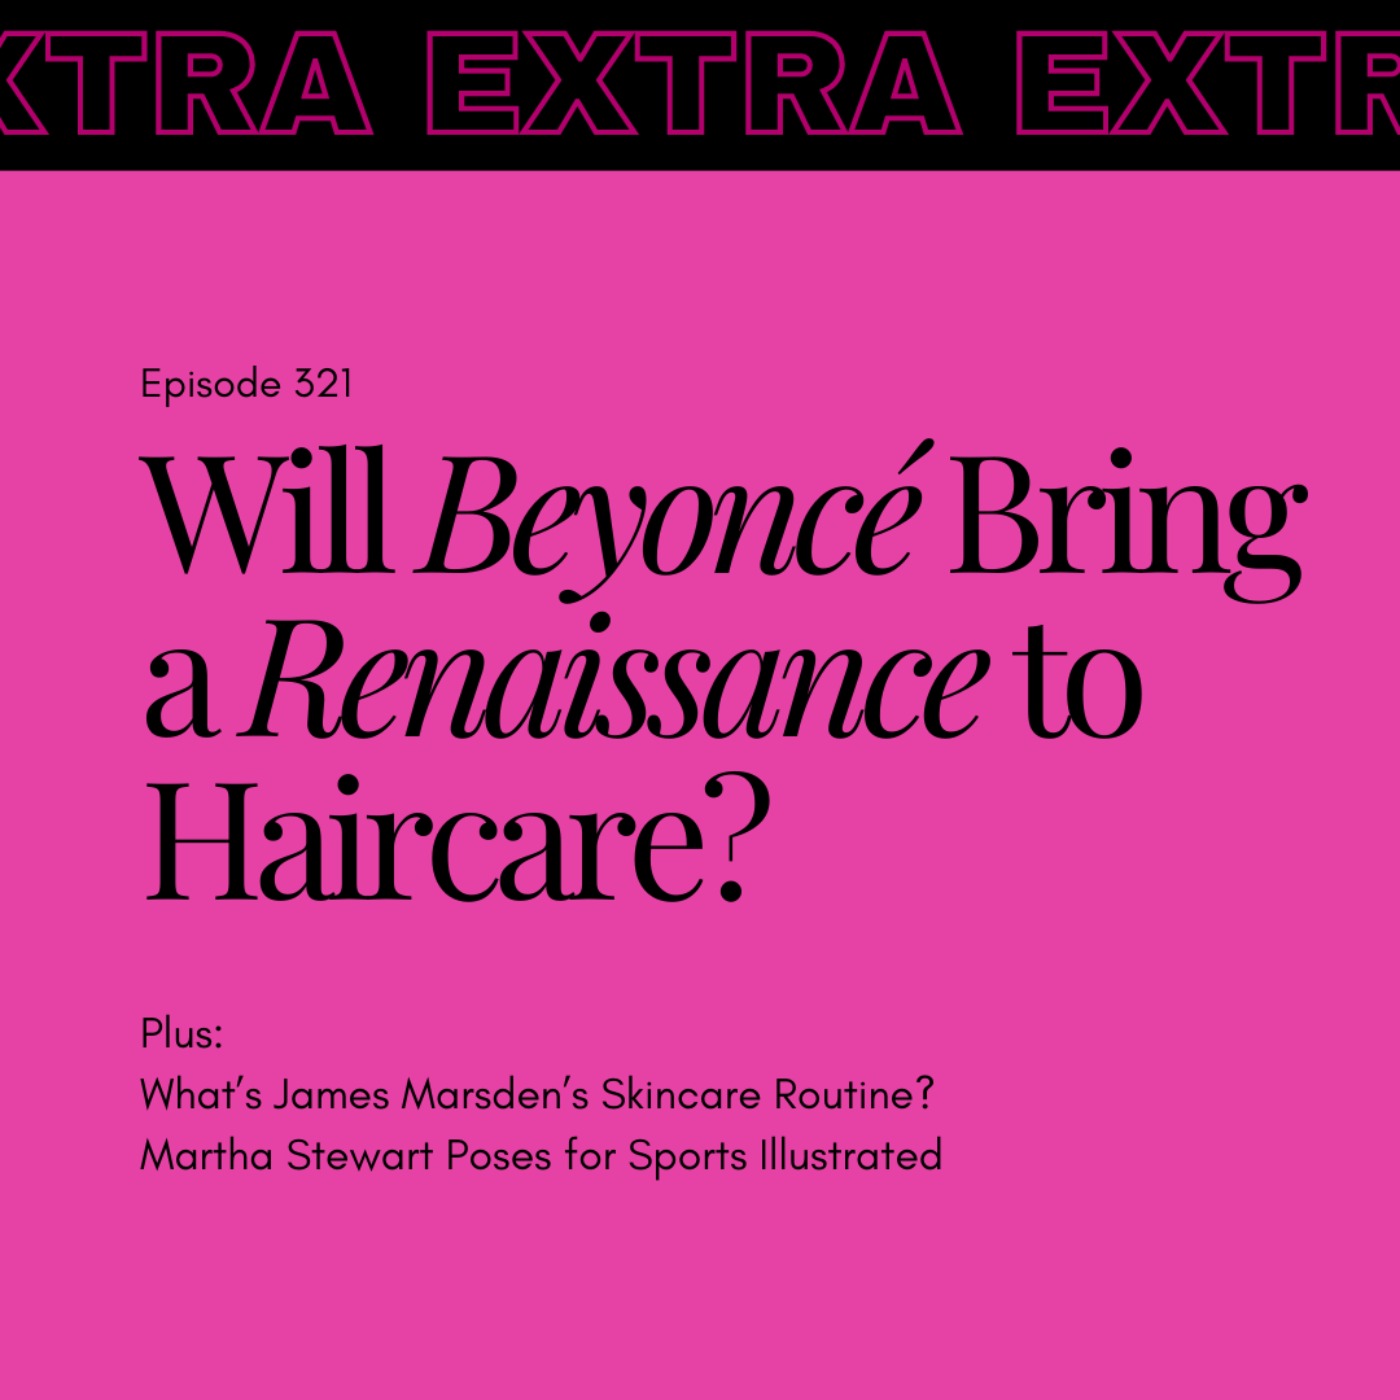 Will Beyoncé Bring a Renaissance to Haircare?